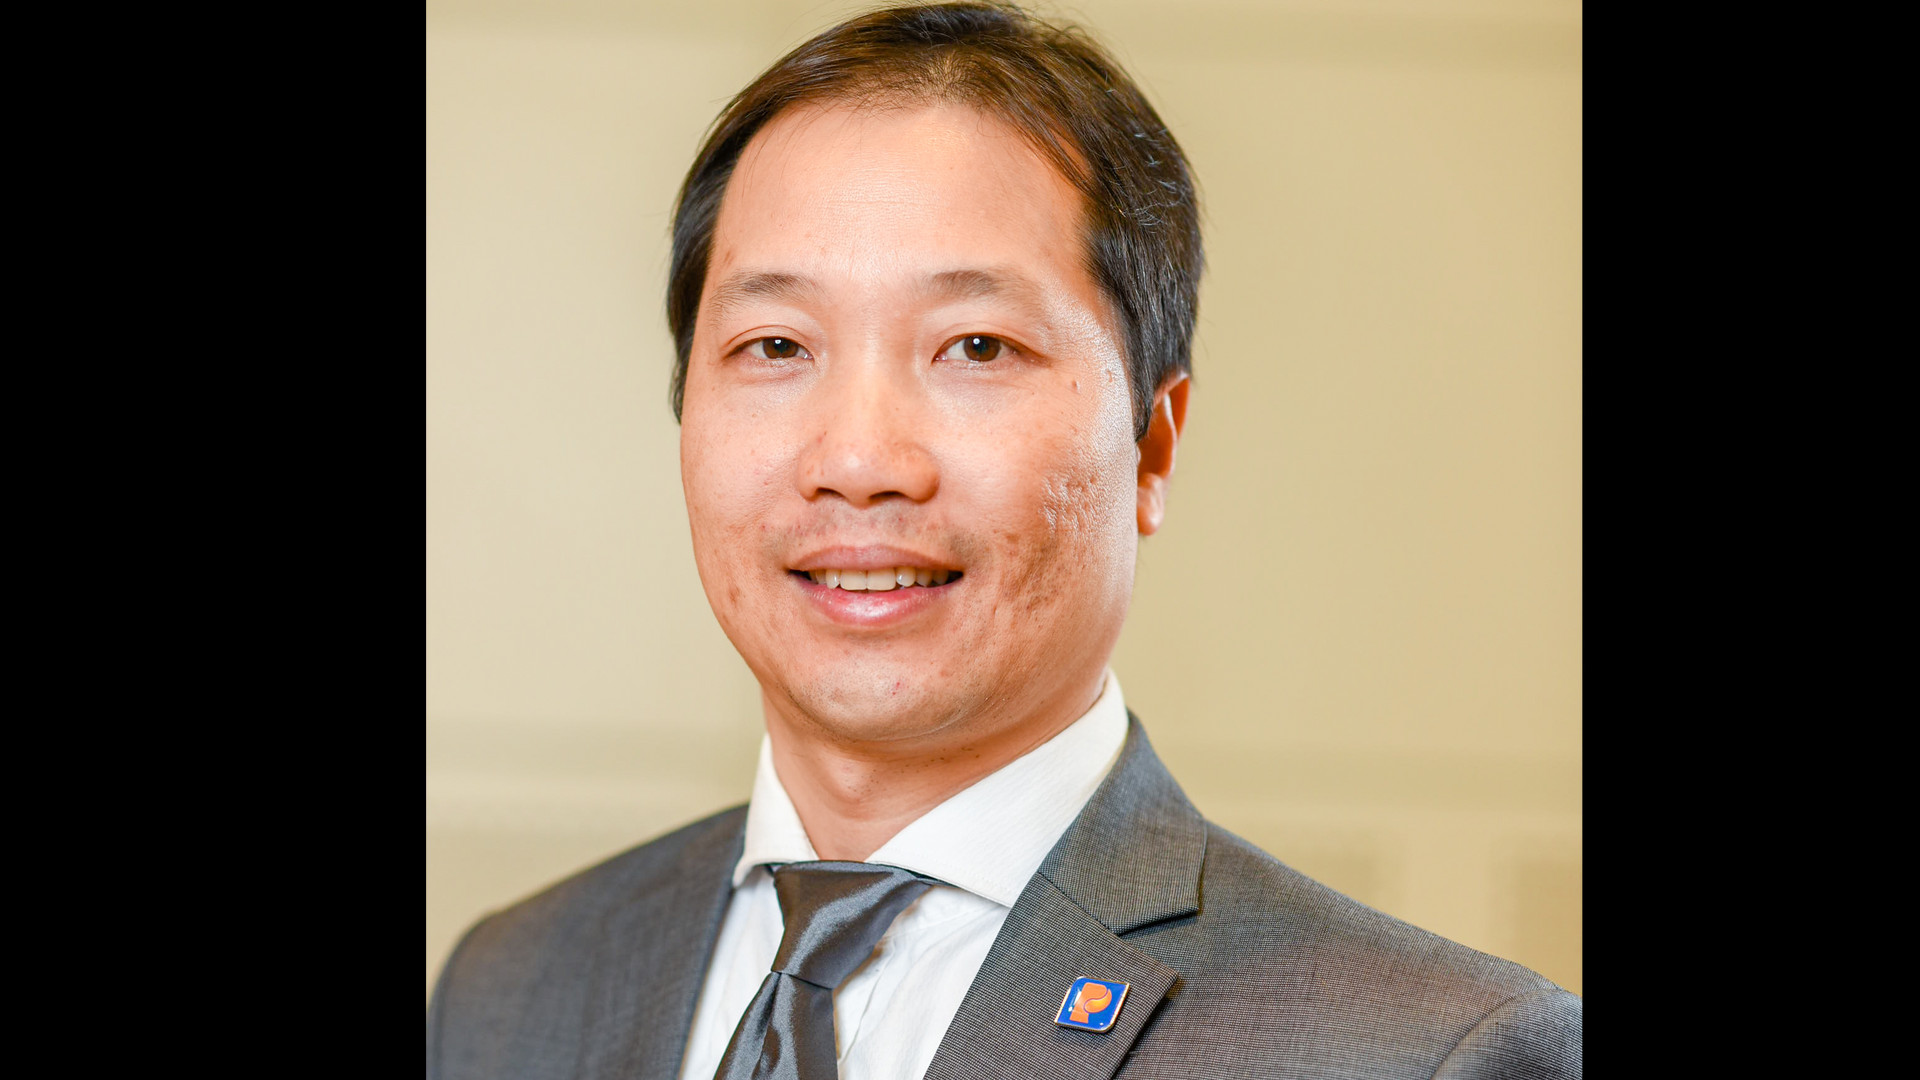 ông Nguyễn Quang Dũng tiếp tục giữ chức vụ Phó tổng giám đốc Tập đoàn Xăng dầu Việt Nam,